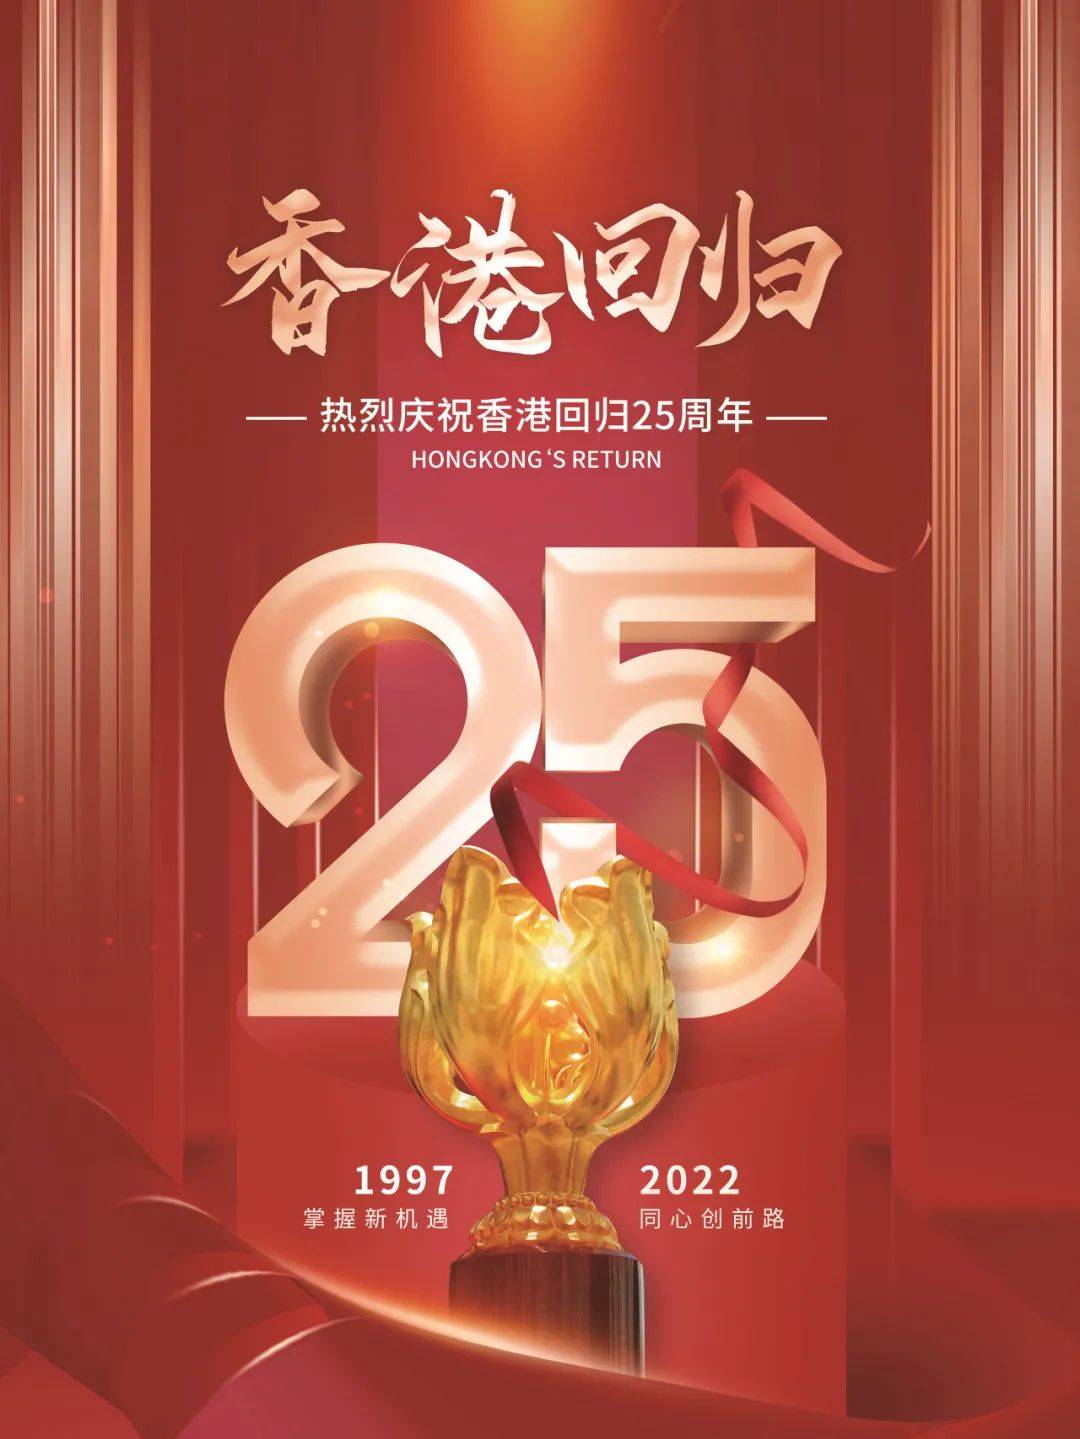 香港回归祖国25周年,一起传递:祝福香港,祝福祖国!